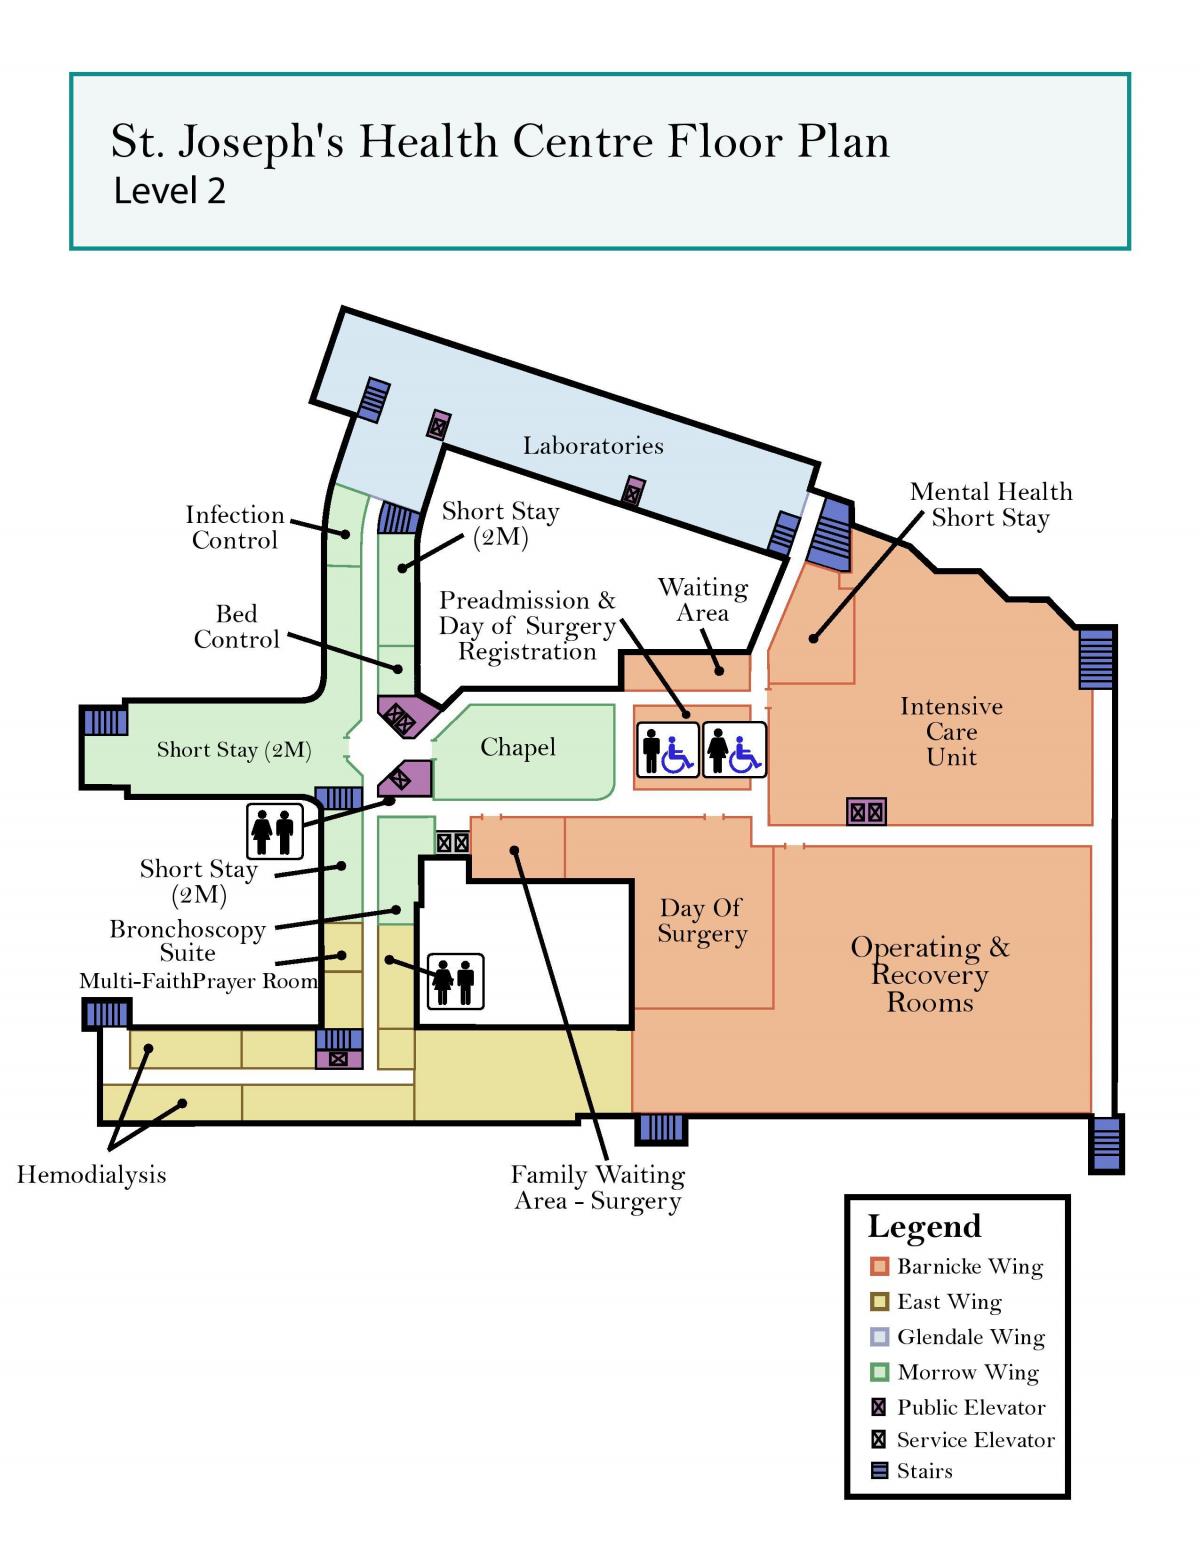 नक्शे के सेंट जोसेफ स्वास्थ्य केंद्र टोरंटो स्तर 2